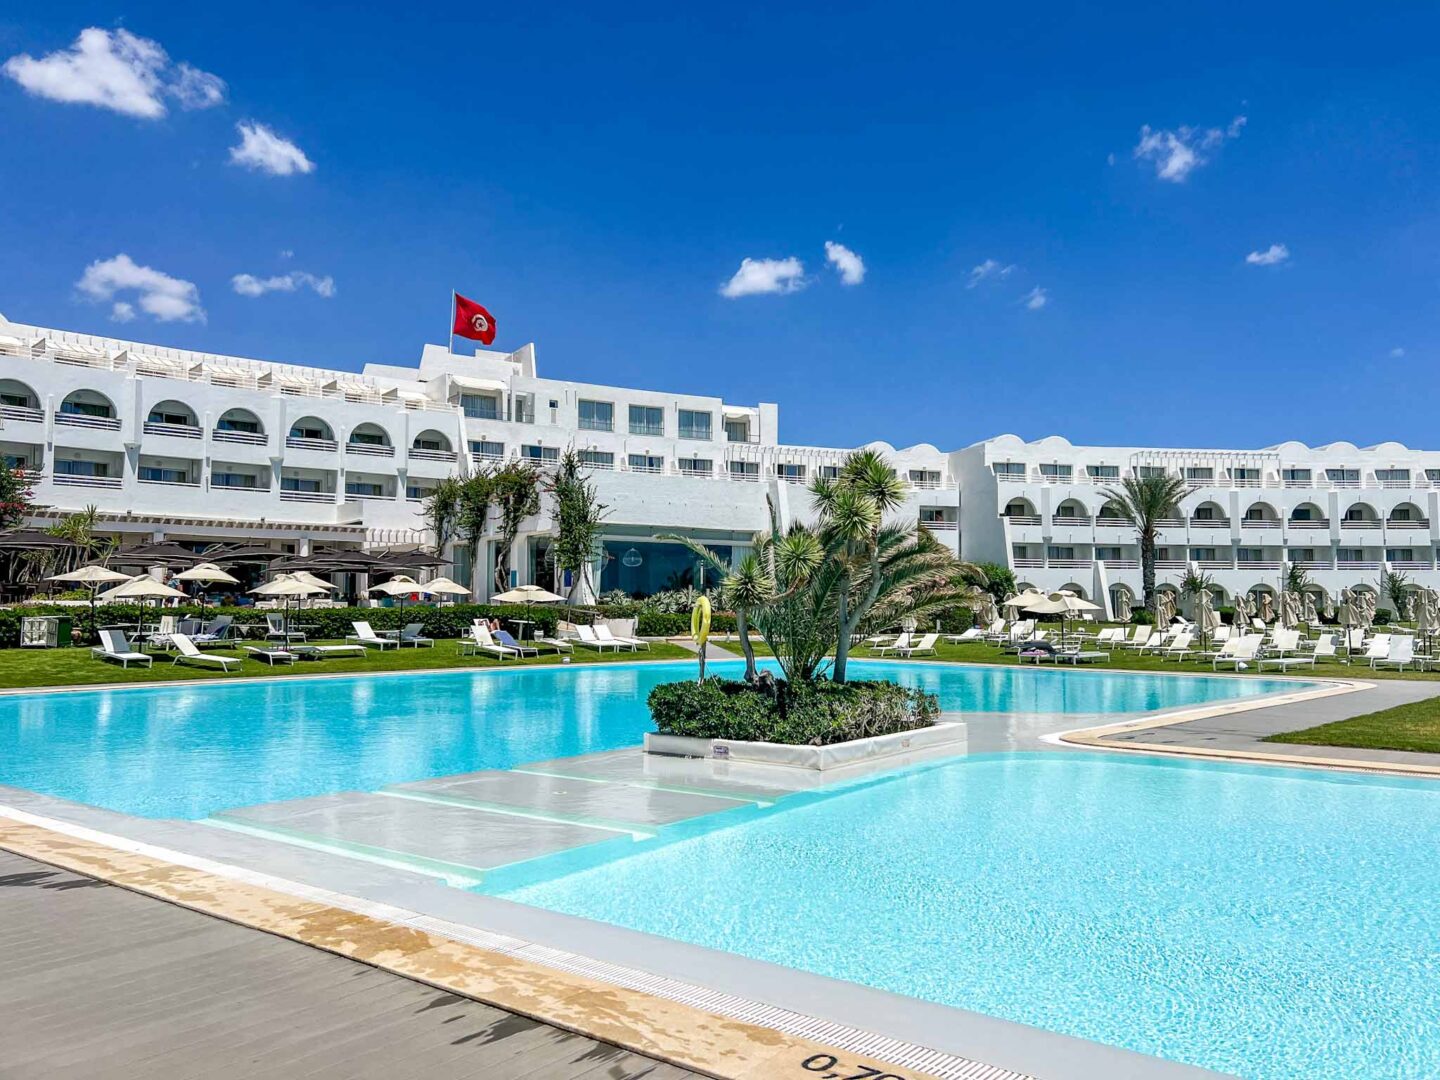 Tunisia itinerary, 3 days in Tunisia, Le Sultan pool in Hammamet